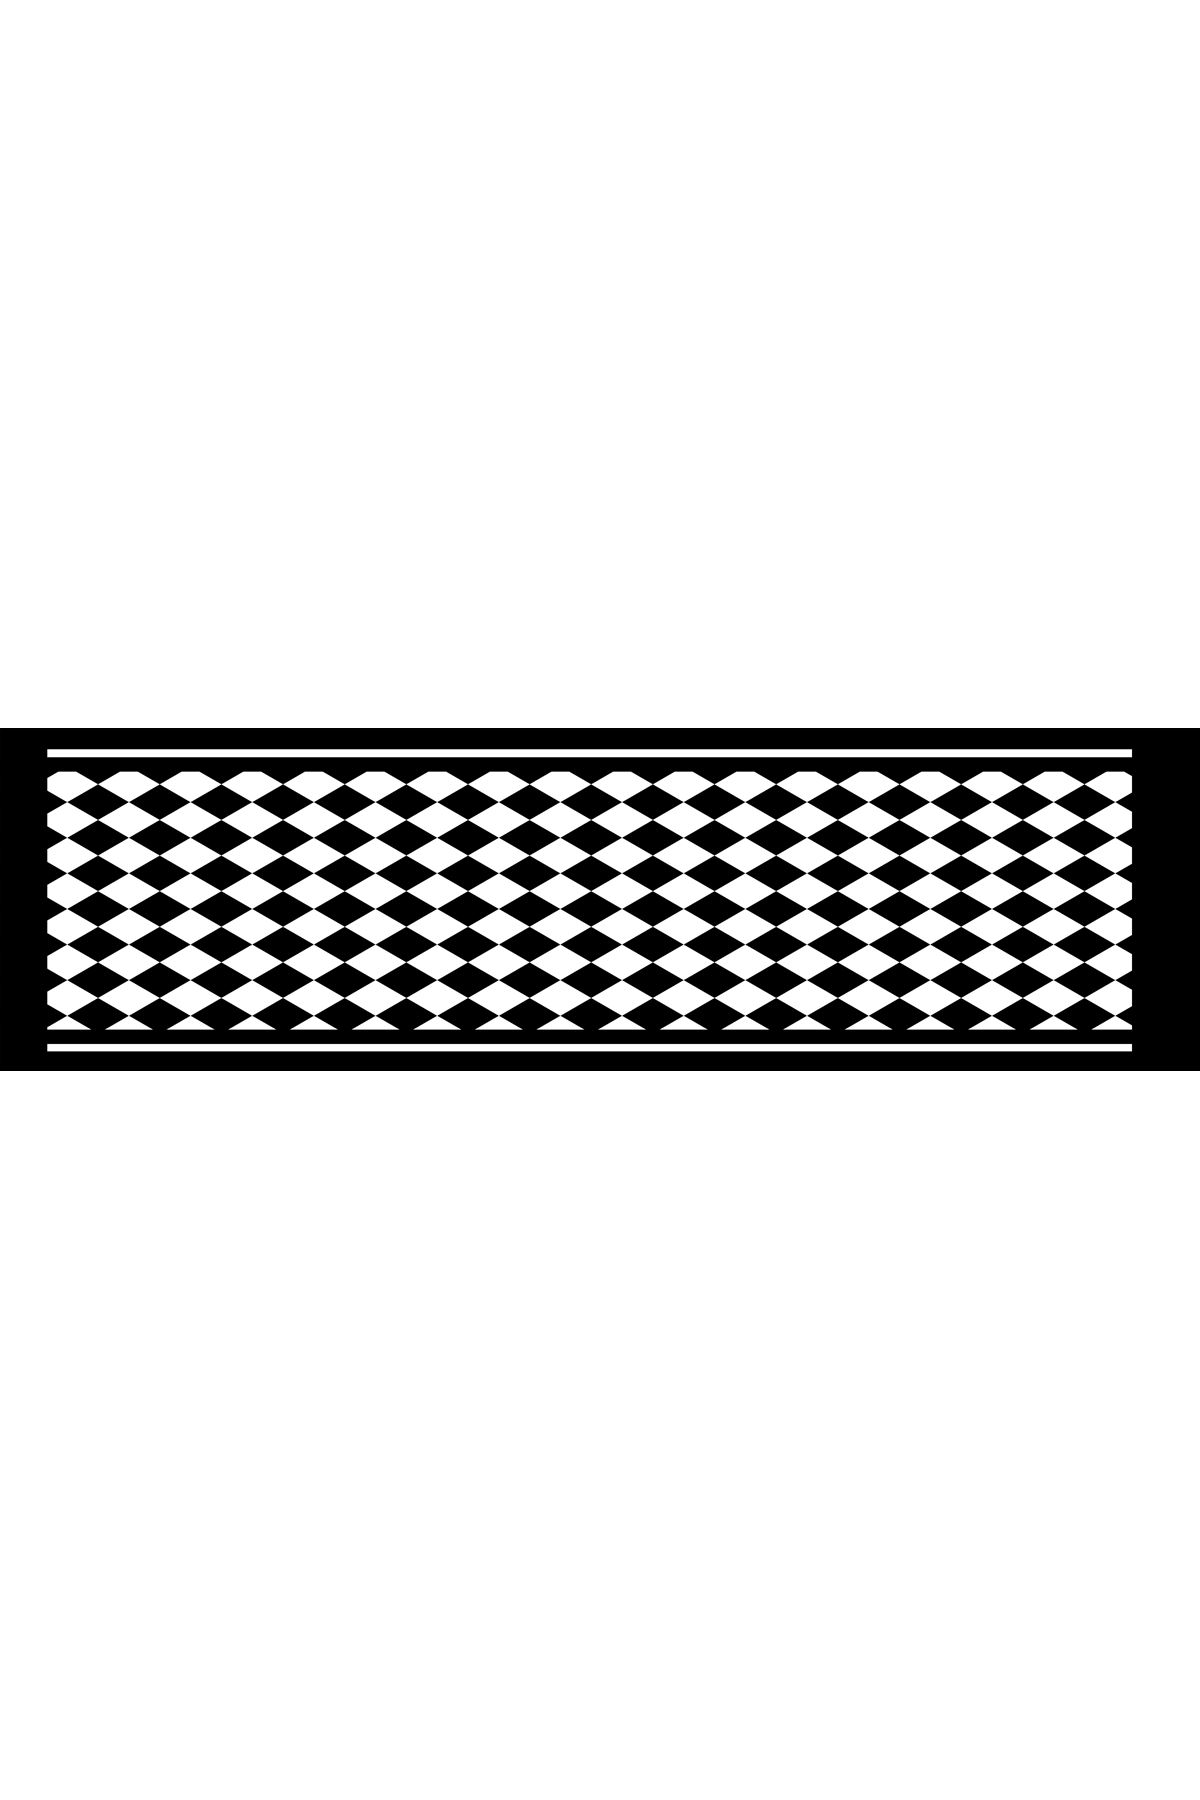 Dijital Baskılı siyah beyaz runner 40/140 cm masa örtüsü damalı